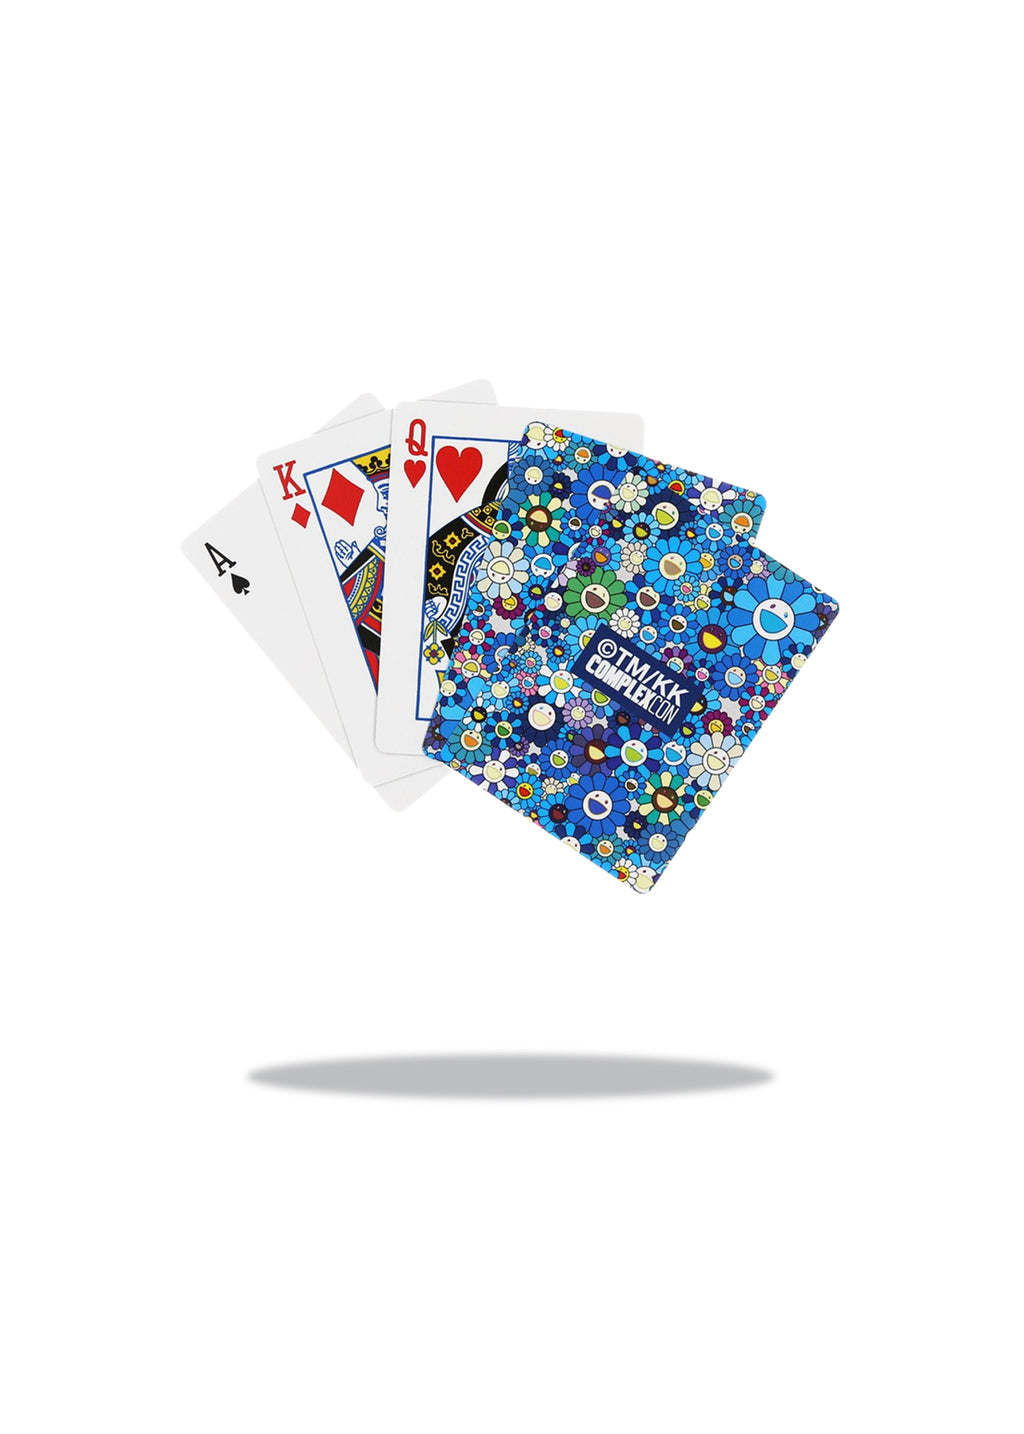 Murakami Complexcon Play Cards